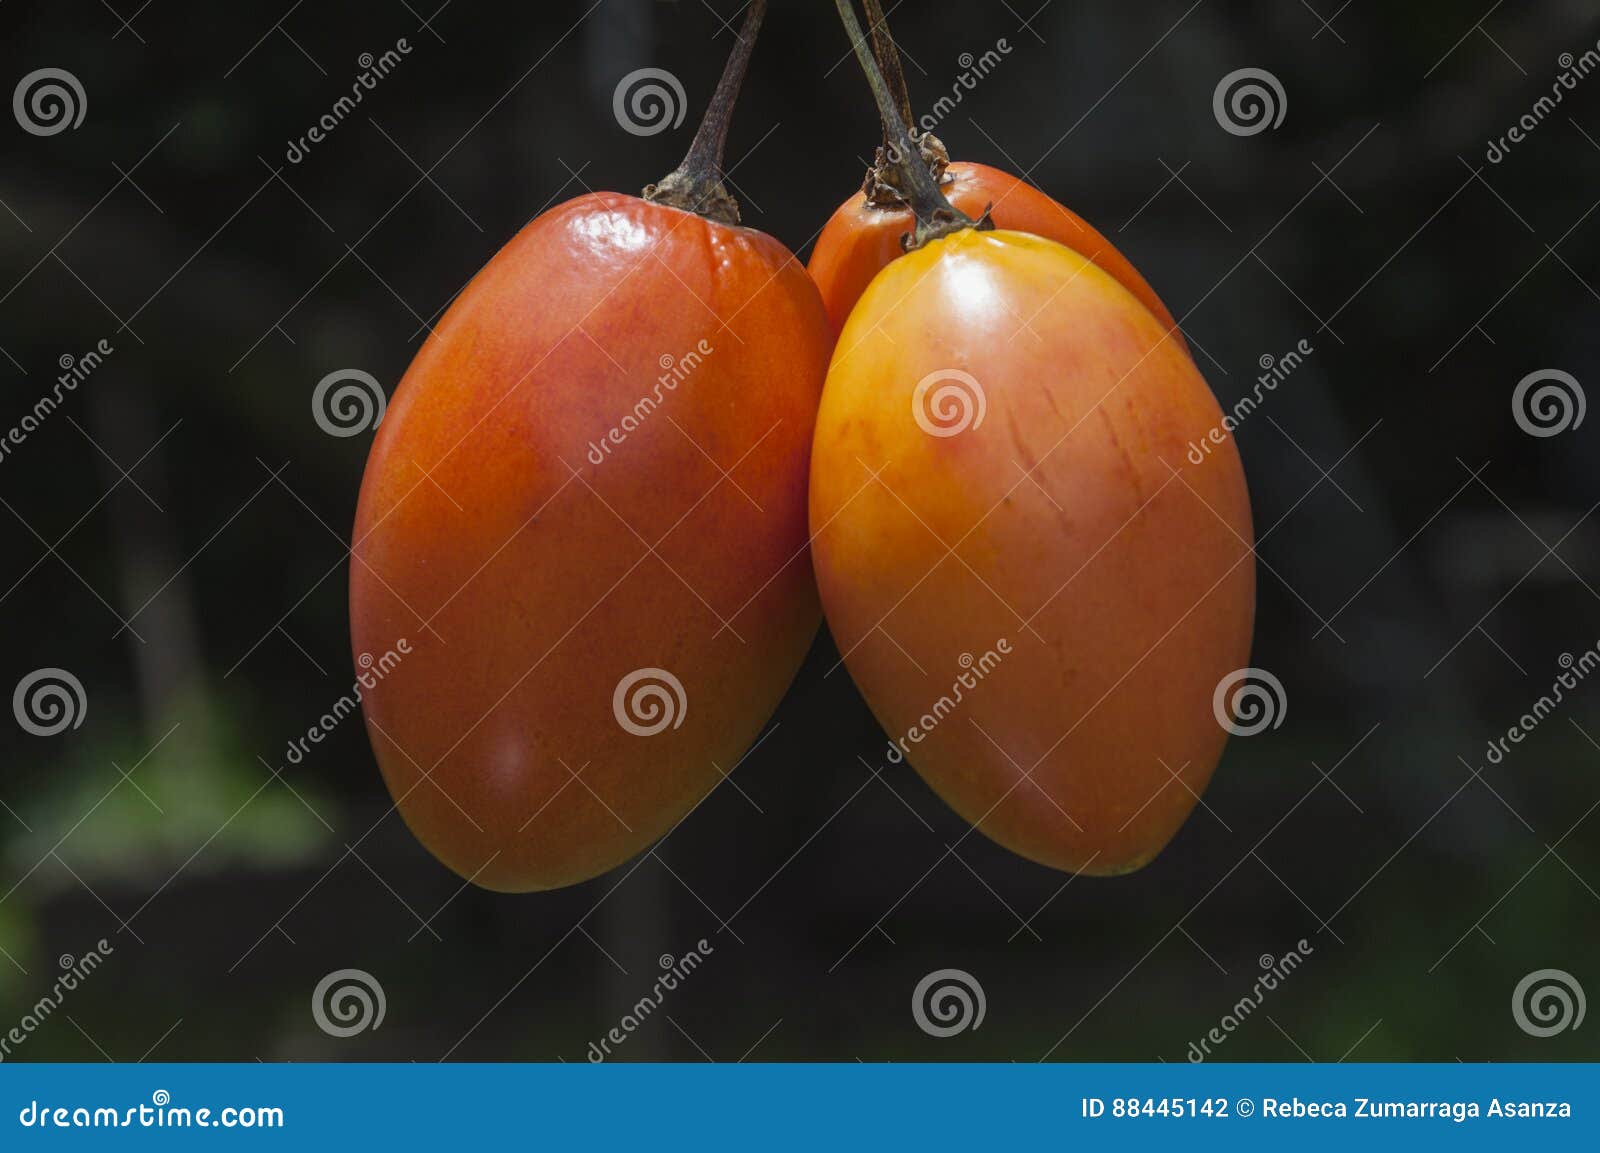 rama de tomate de ÃÂ¡rbol